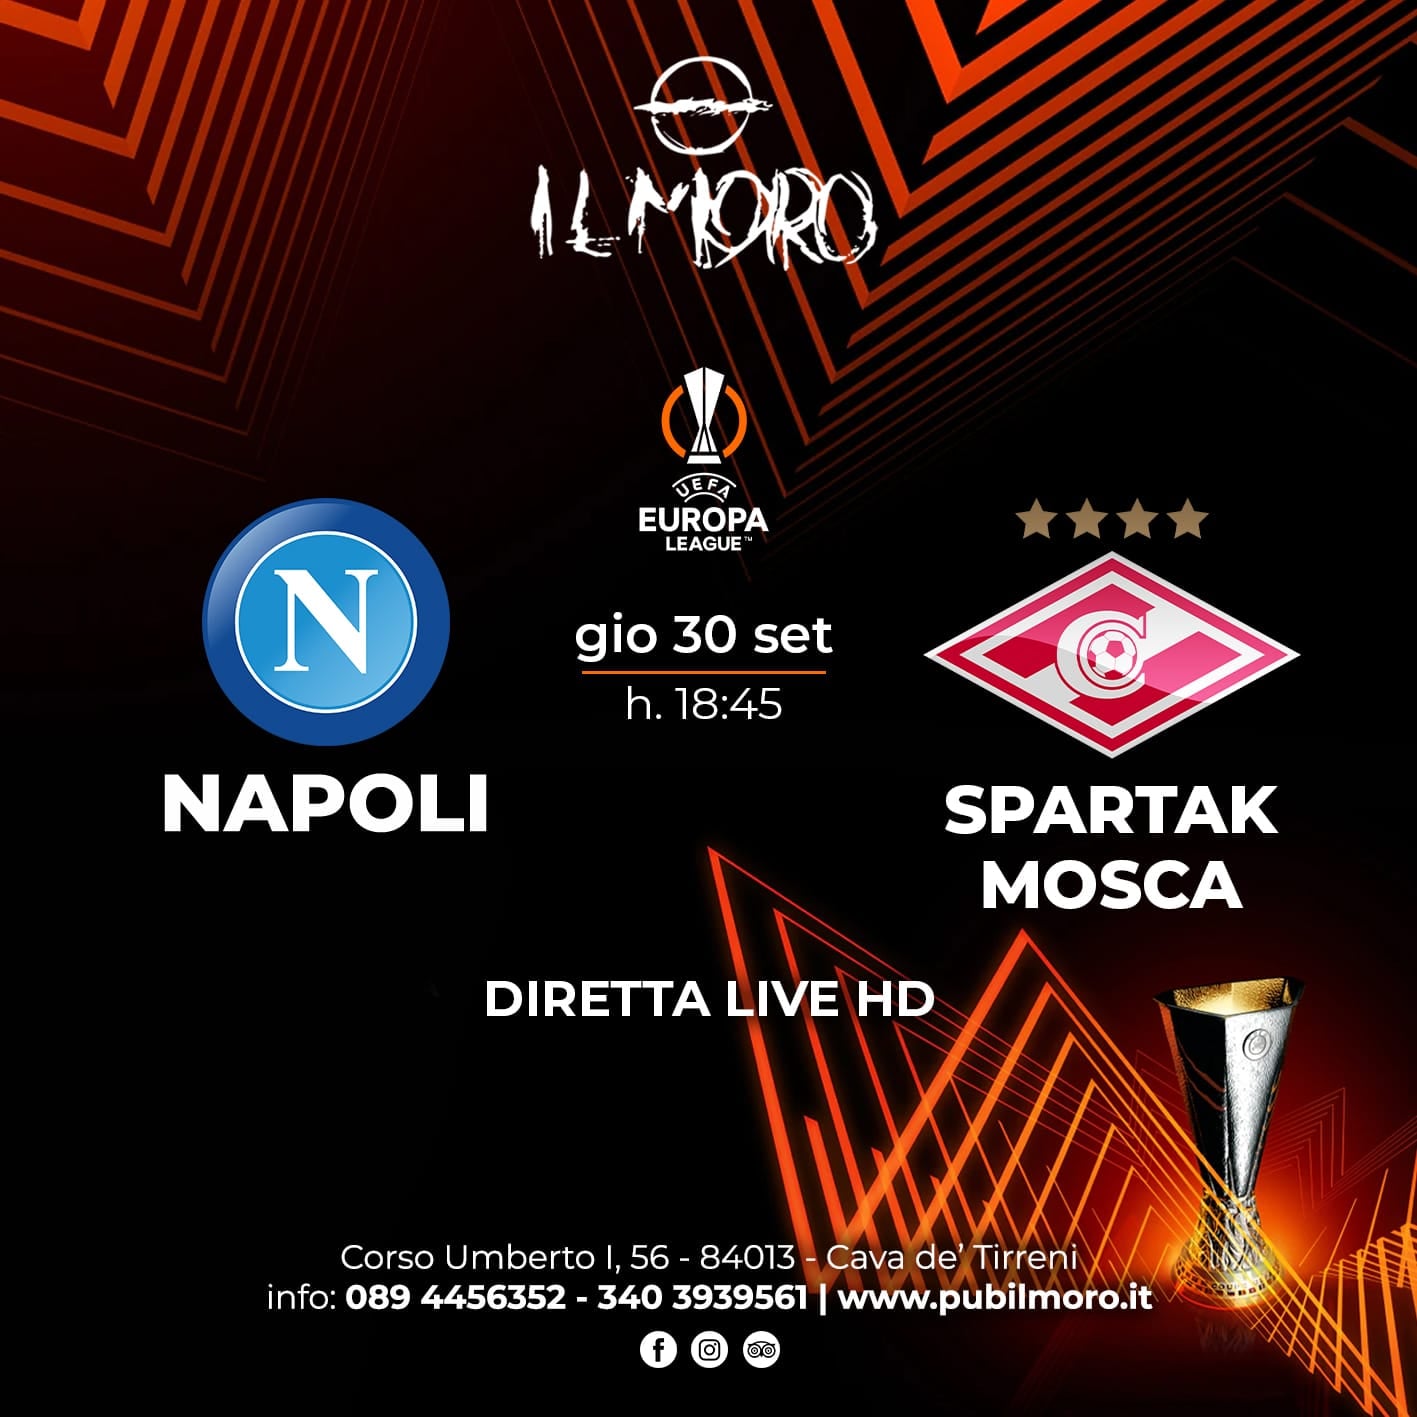 Napoli – Spartak Mosca, Giovedì 30 Settembre al Pub Il Moro